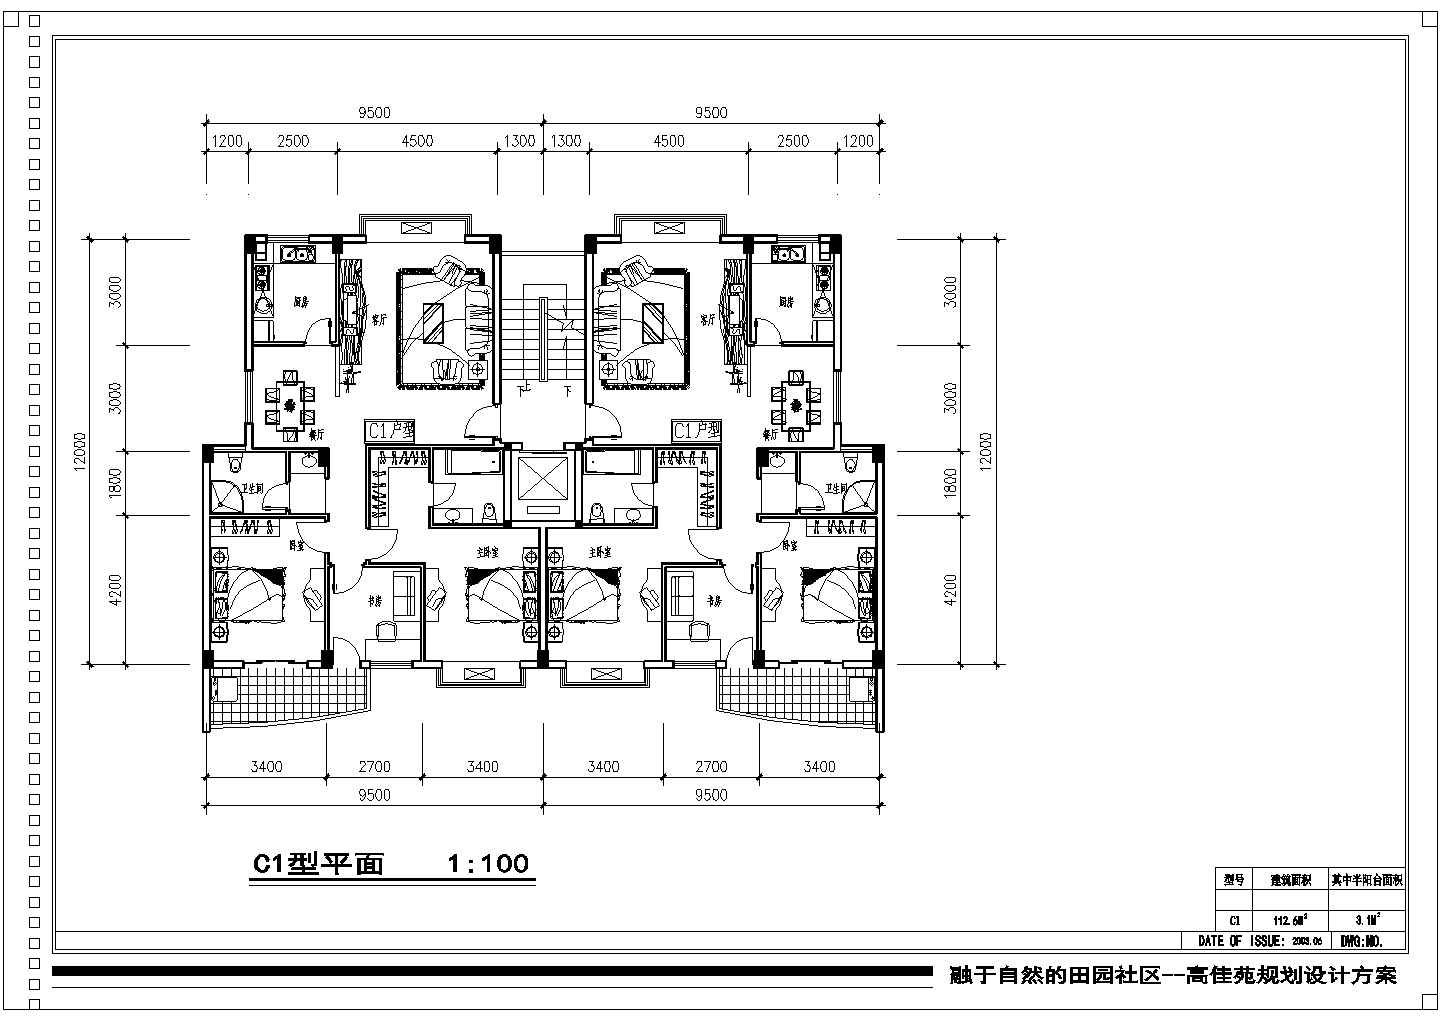 112平方米小高层一梯两户住宅户型设计cad图(含效果图)